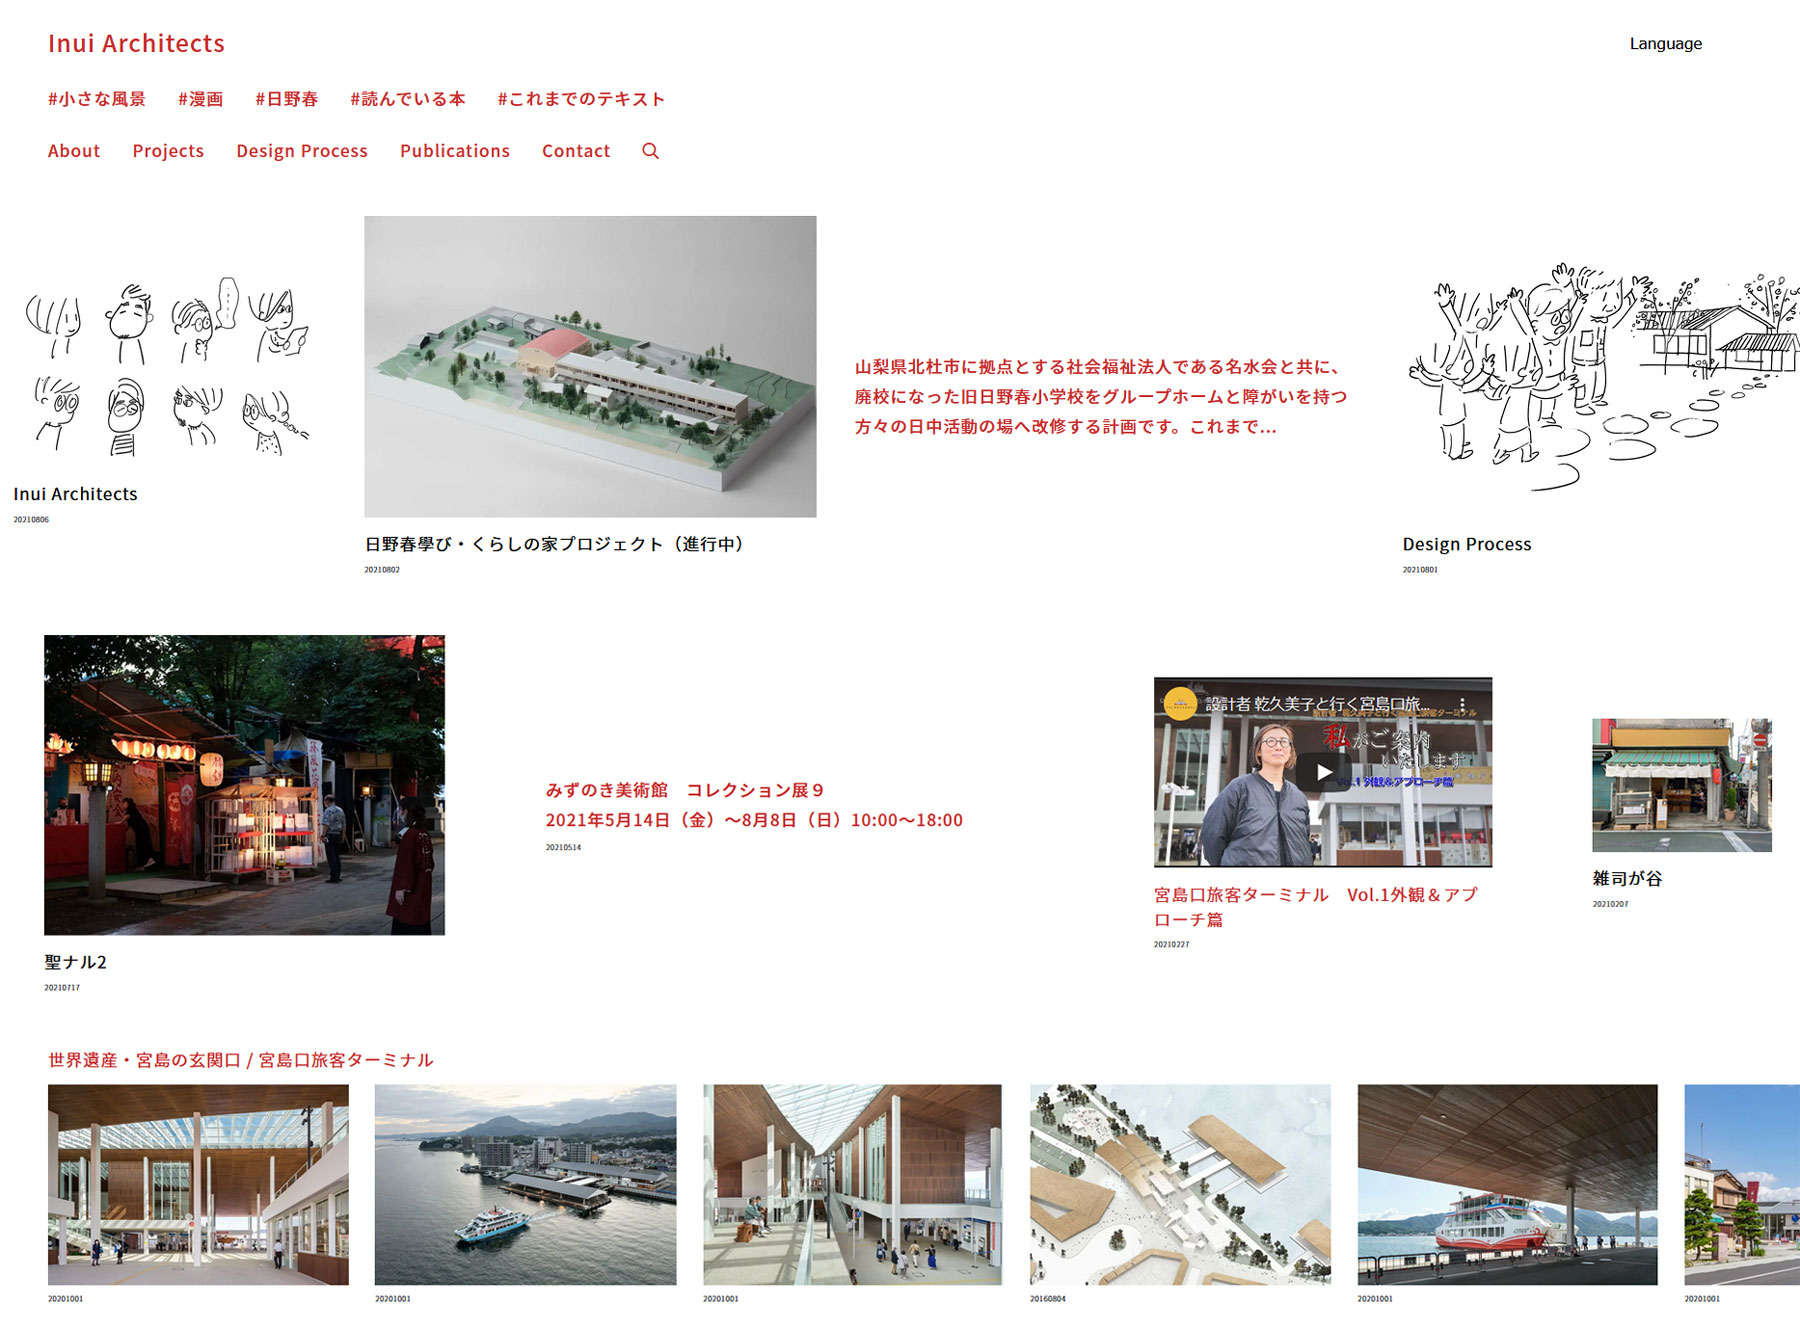 乾久美子のウェブサイトがリニューアル。作品写真だけでなく事務所全体 